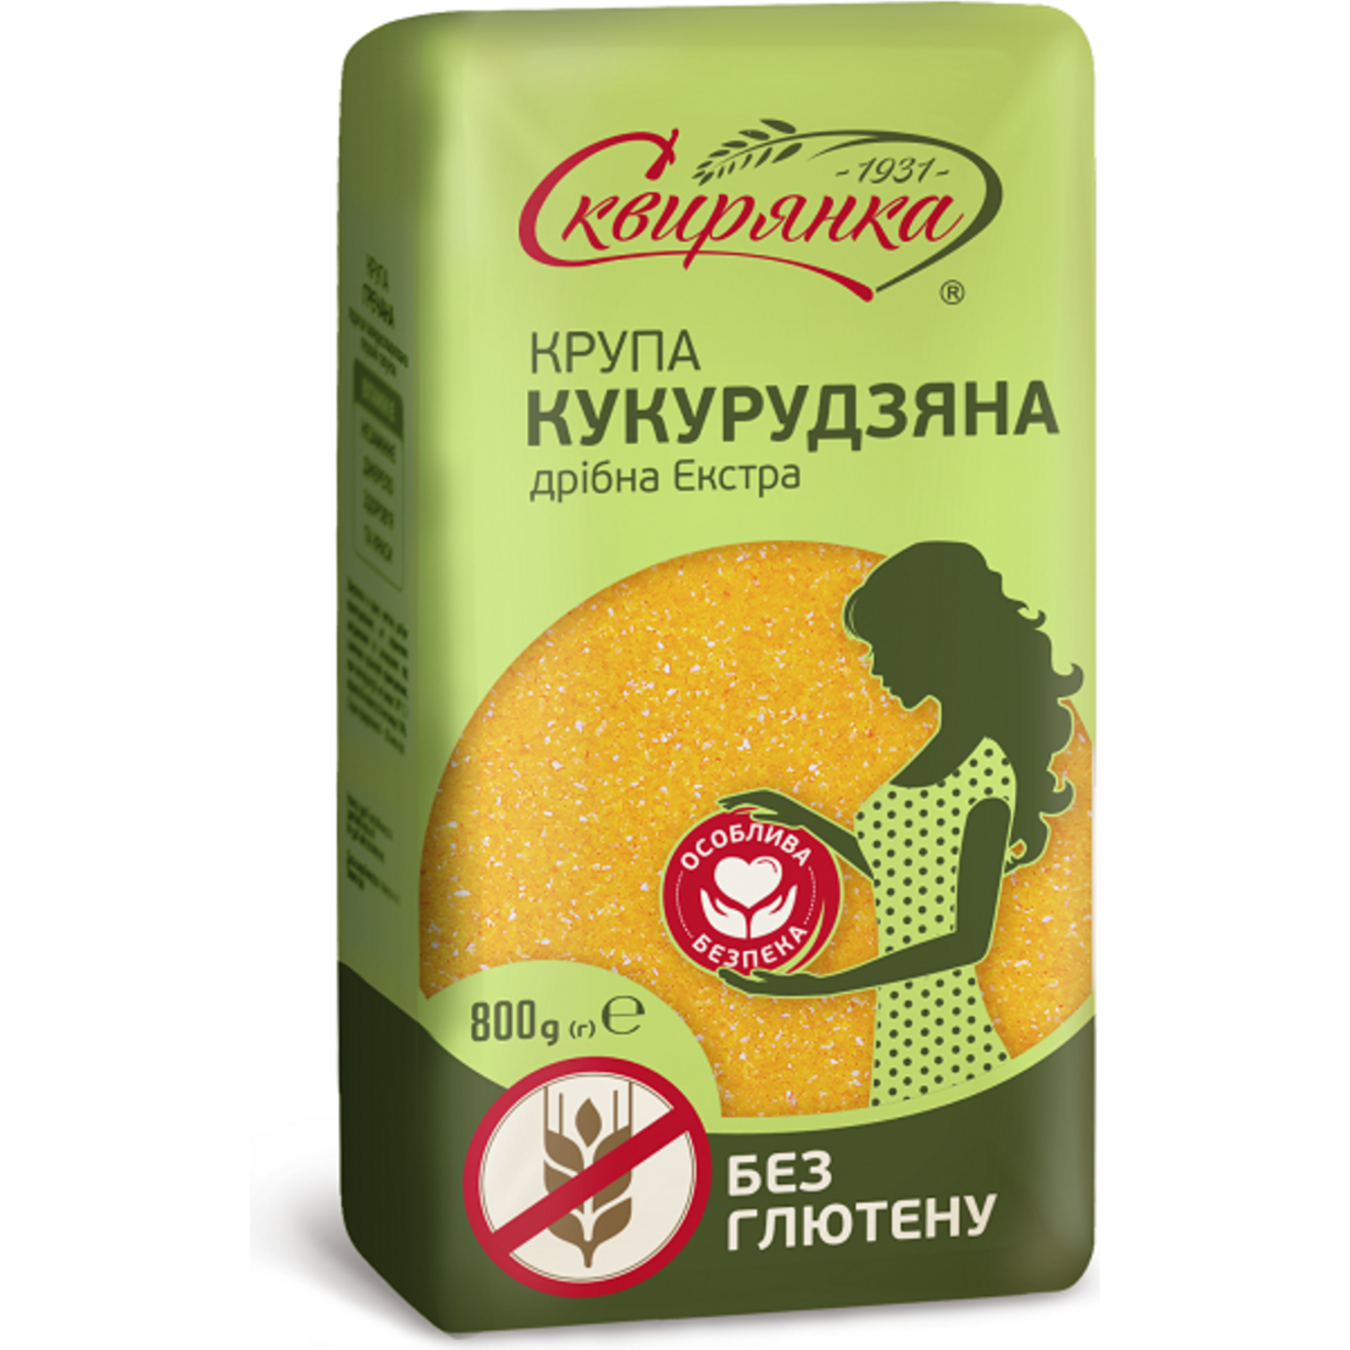 Skviryanka Extra without gluten corn groats 800g